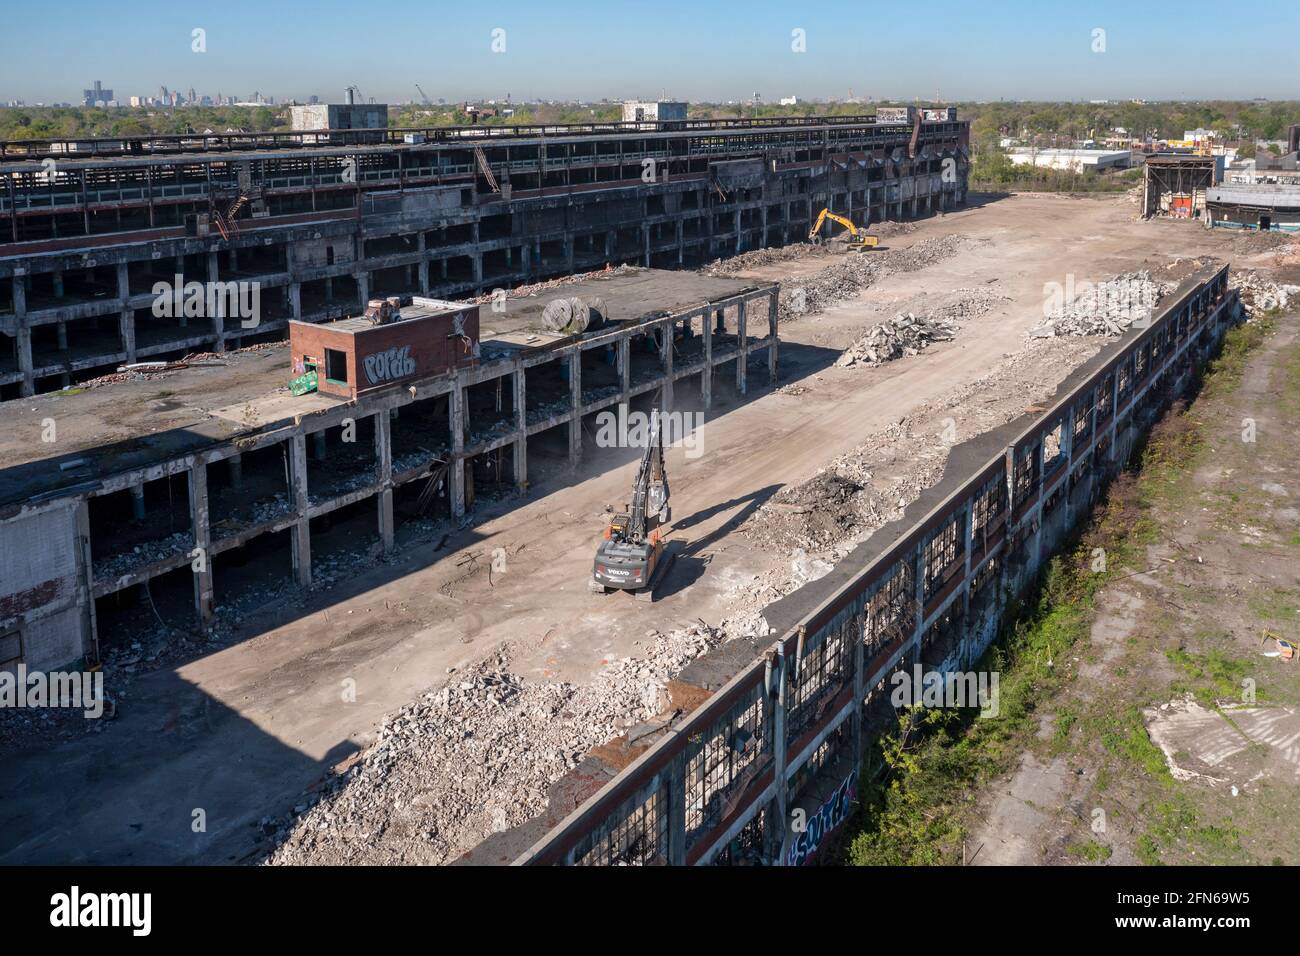 Detroit, Michigan - démolition de l'usine d'emboutissage Cadillac, vieille de près de 100 ans, qui est fermée depuis 1987. Une nouvelle usine de fabrication pour Banque D'Images